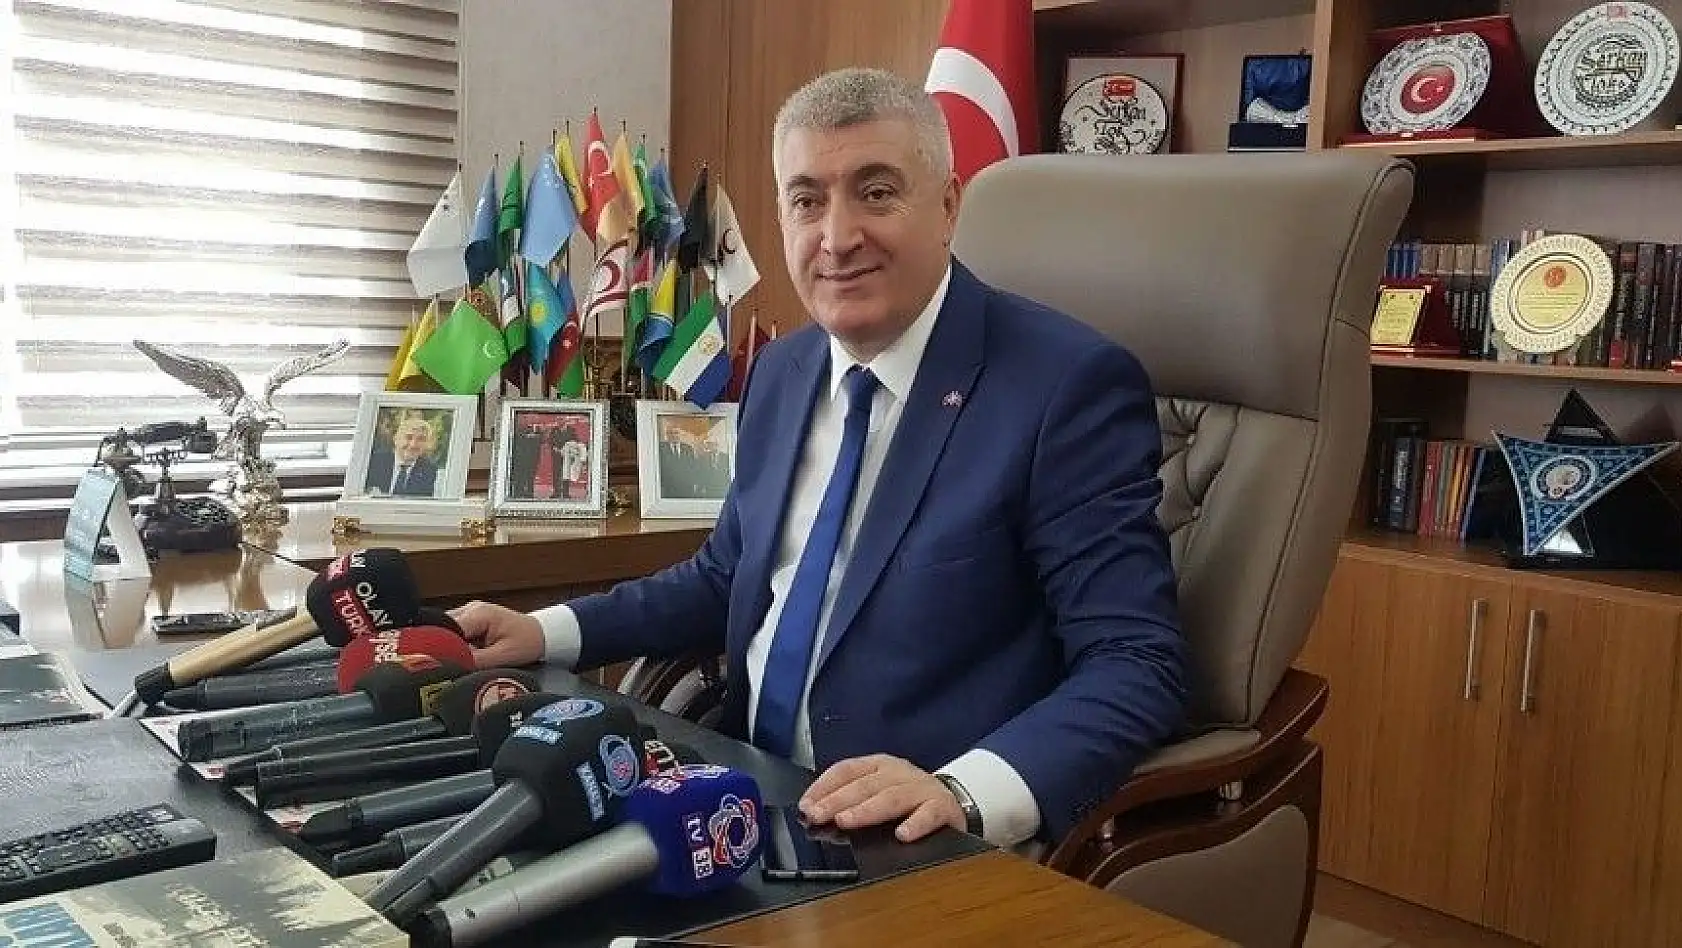 MHP İl Başkanı Serkan Tok, 'MHP İstanbul için üstüne düşen görevi yerine getirmiştir'
